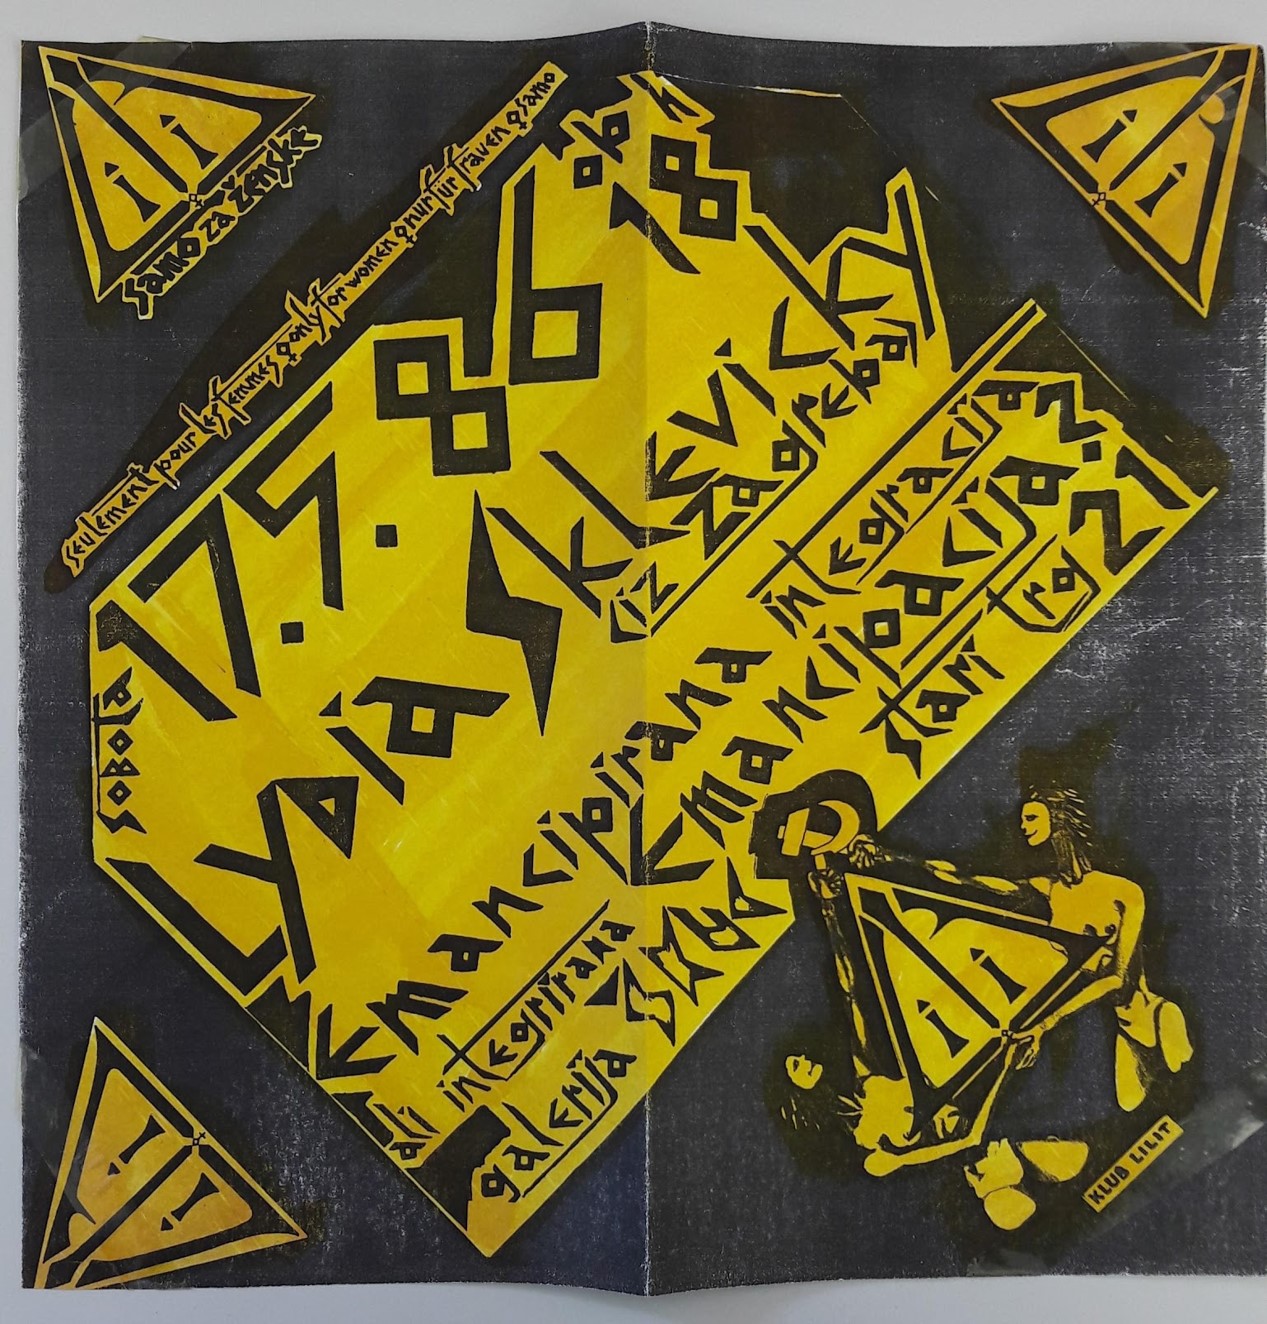 Liublianoje vykusios paskaitos plakatas, 1986 m.